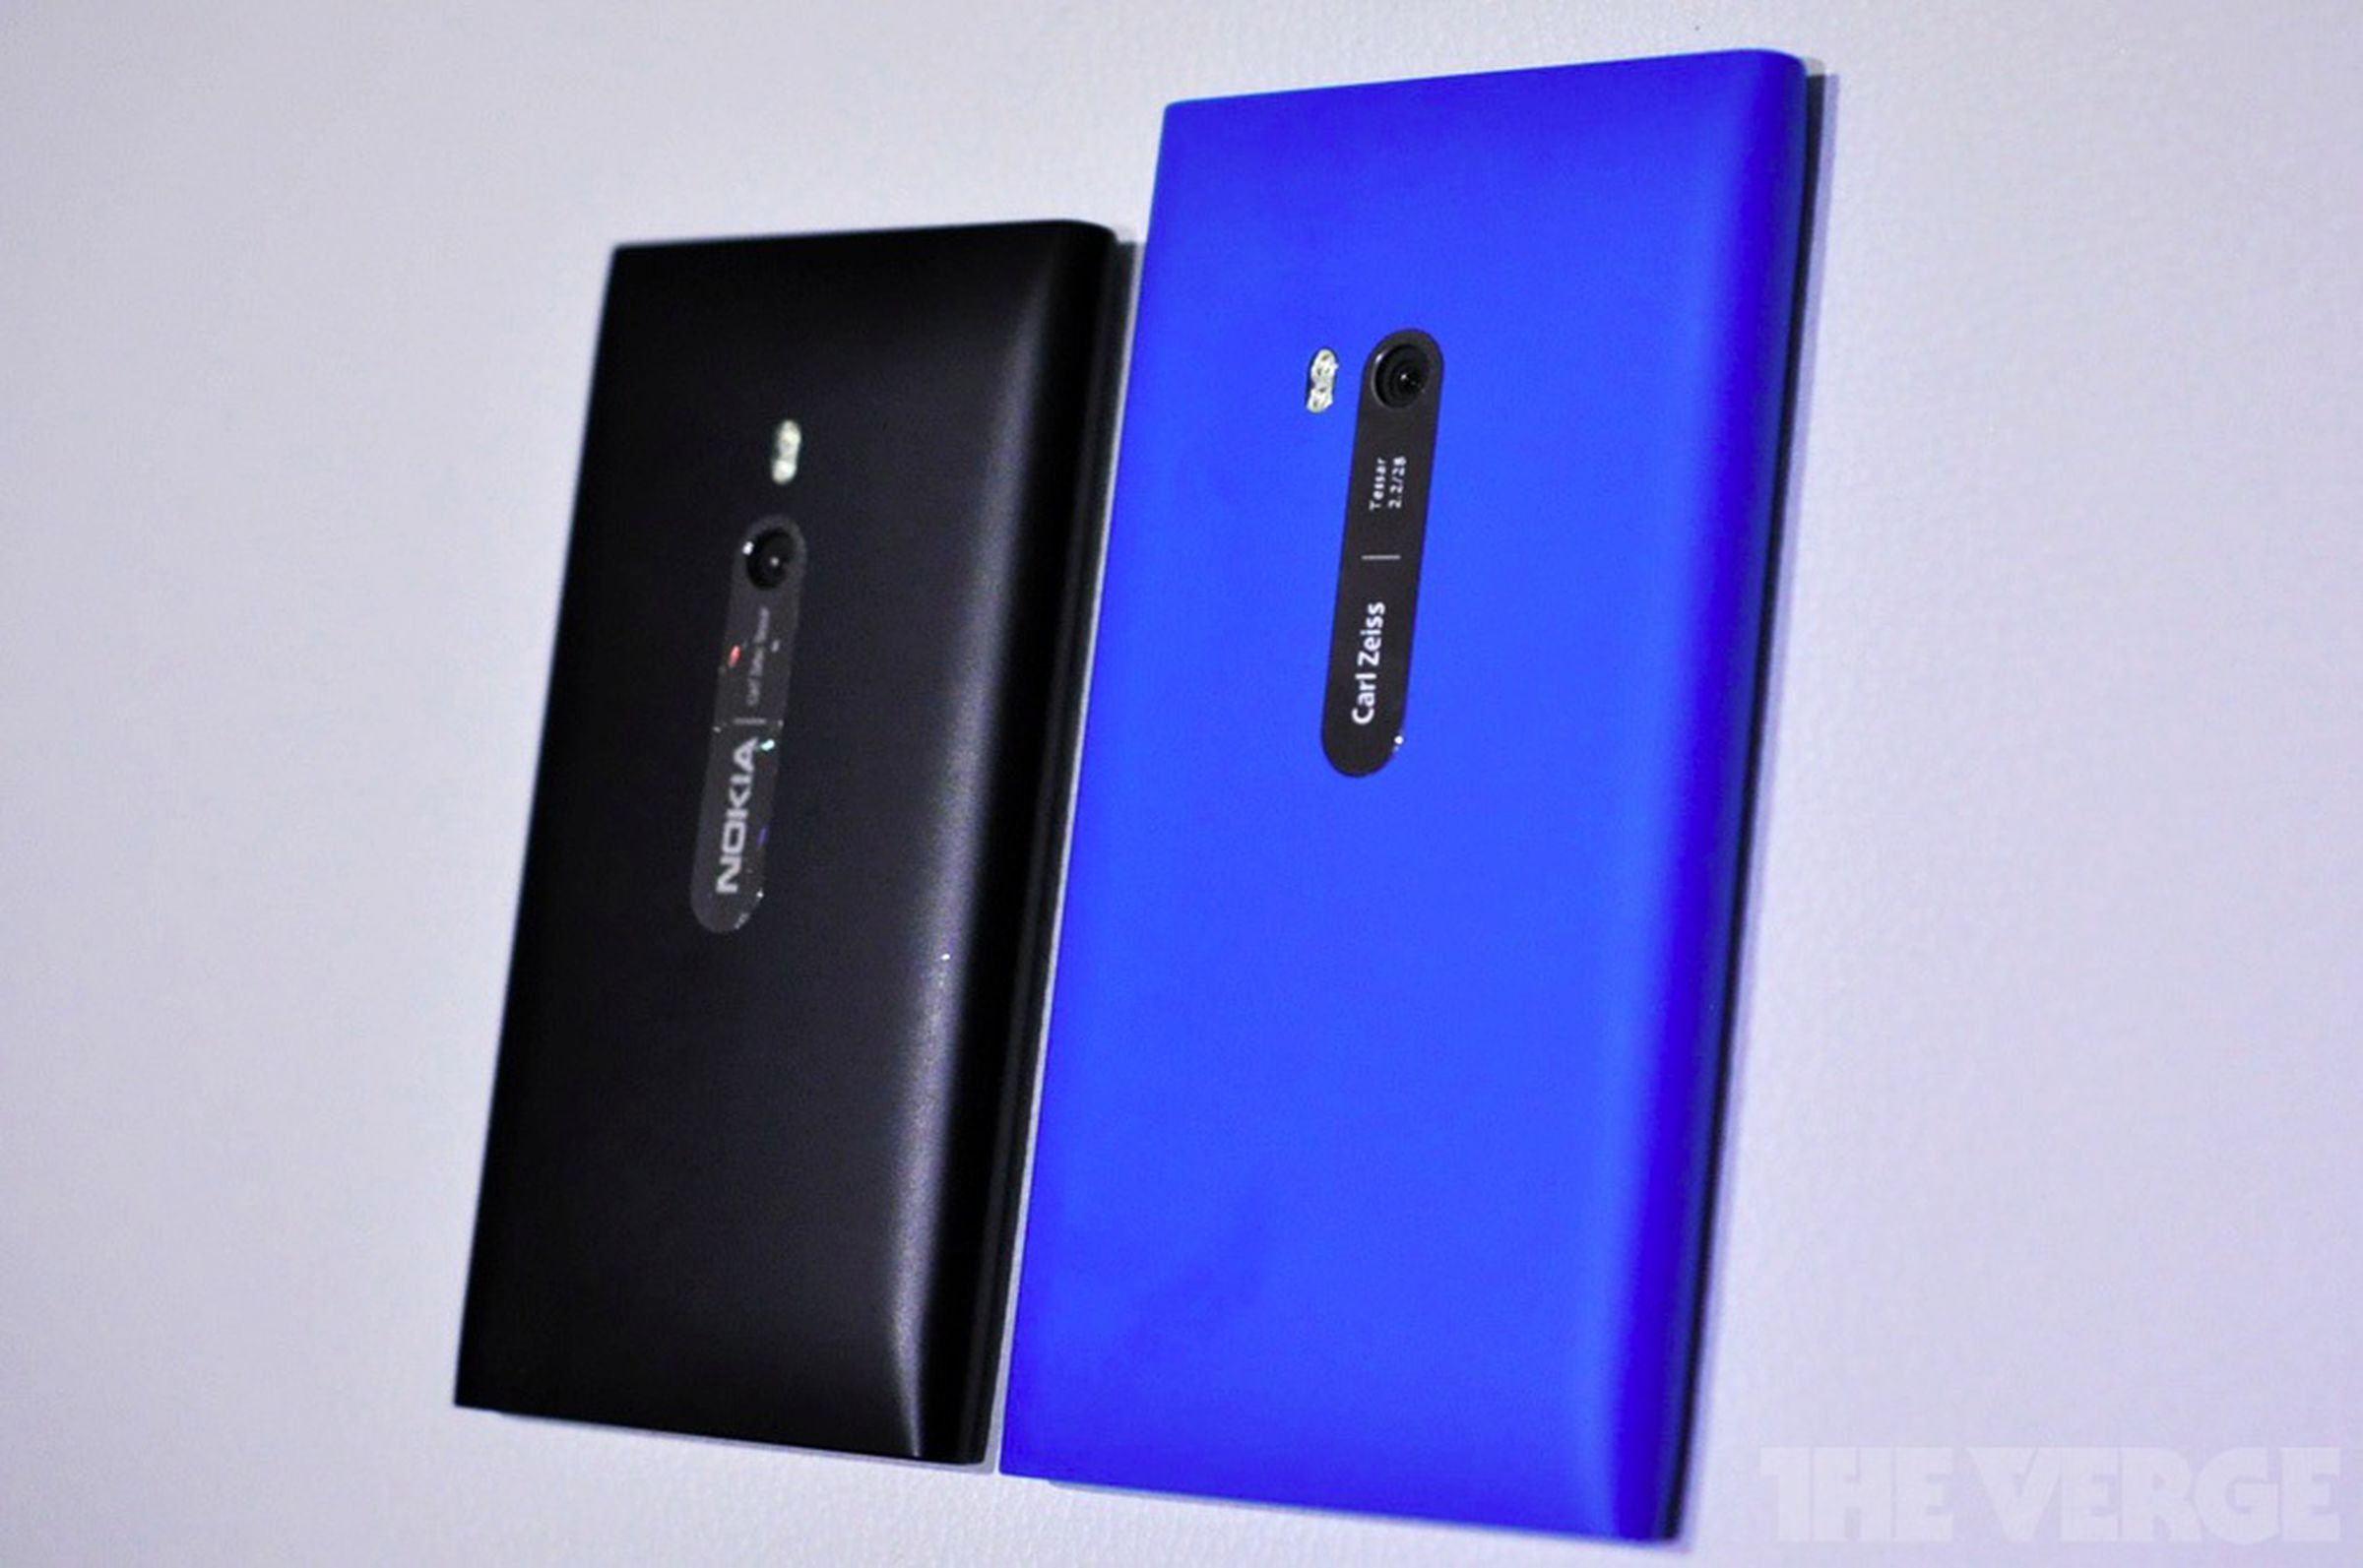 Nokia Lumia 900 preview gallery